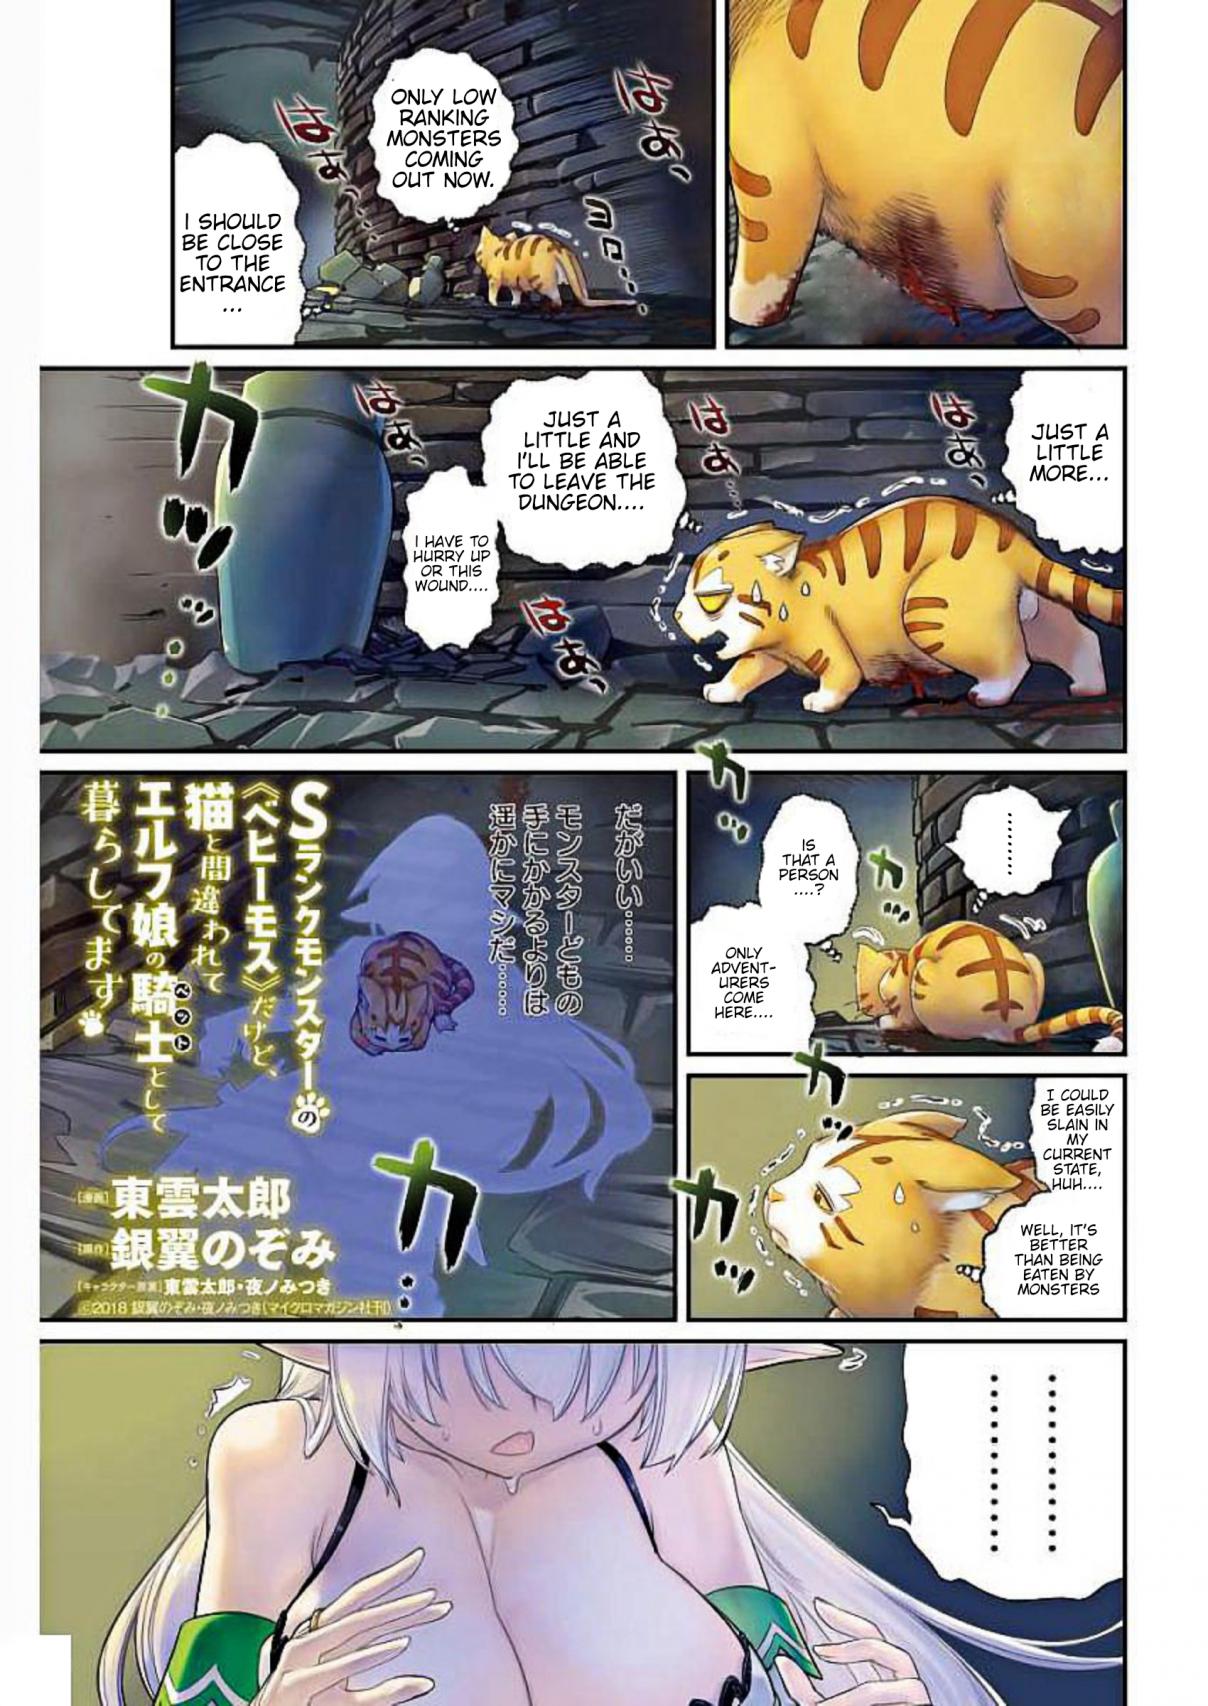 S Rank Monster No <Behemoth> Dakedo, Neko to Machigawarete Elf Musume No Kishi (Pet) Toshite Kurashitemasu Vol. 1 Ch. 1 A Knight's vow